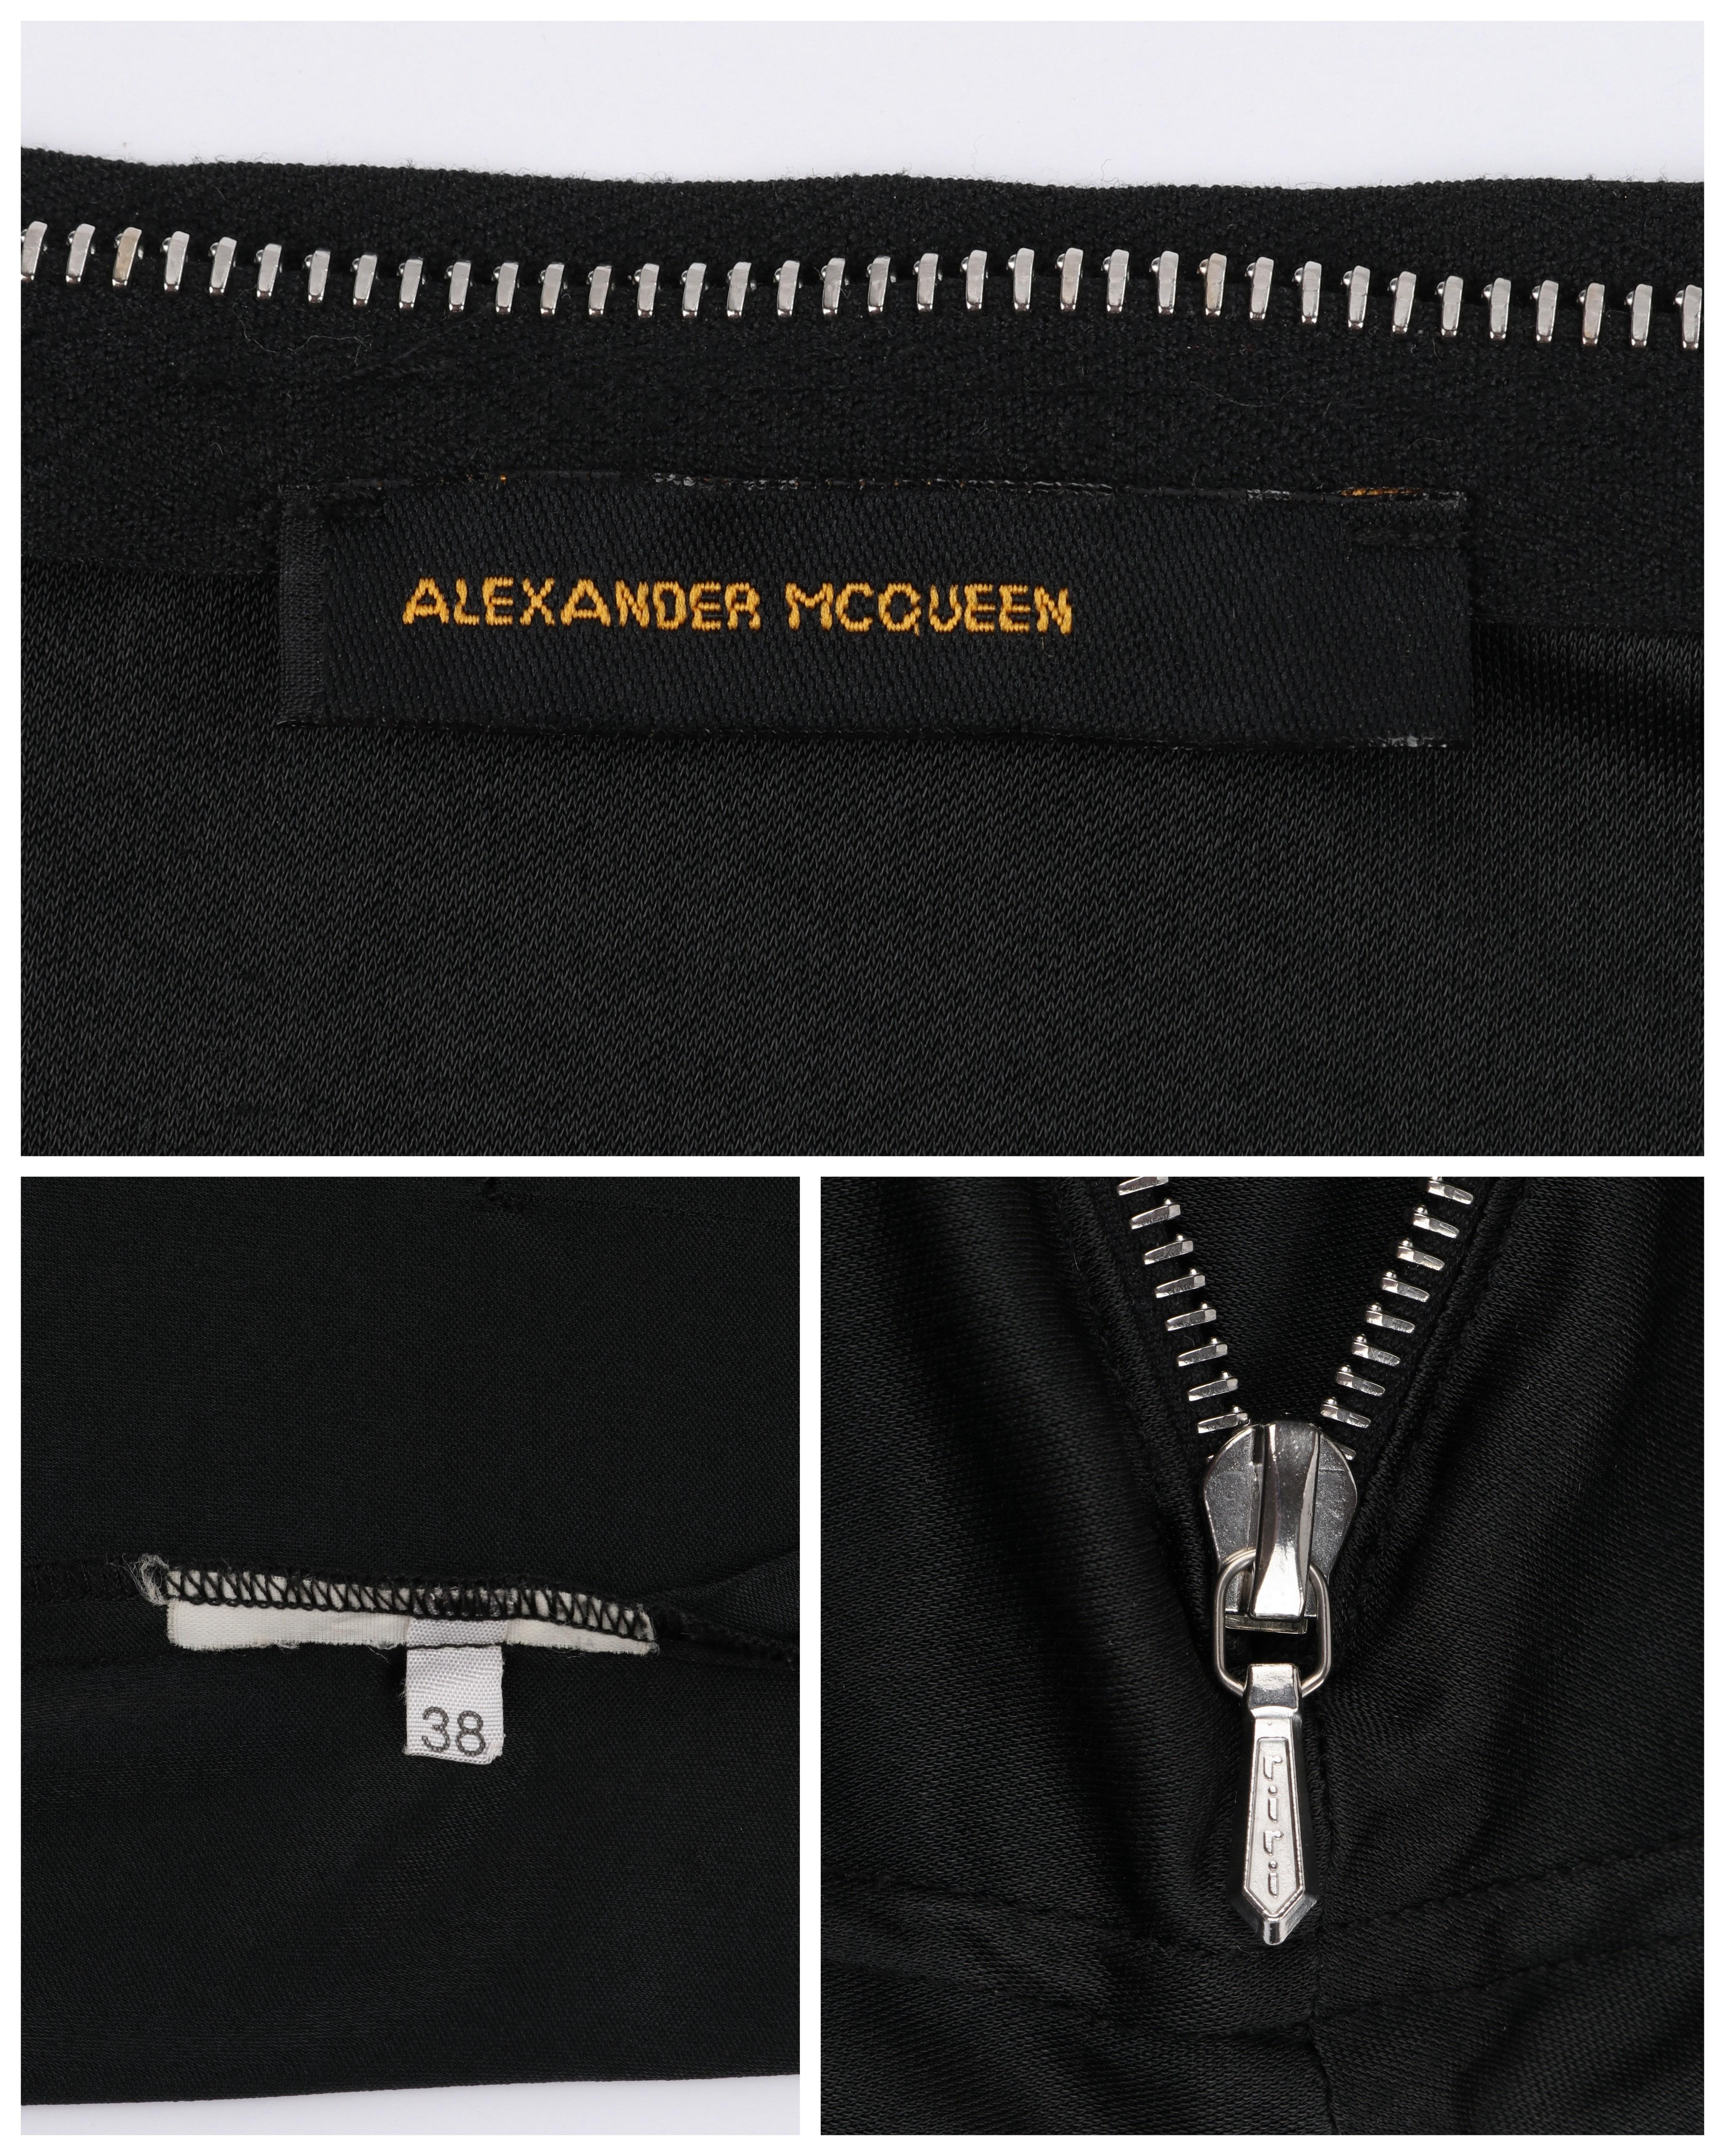 ALEXANDER McQUEEN S/S 1997 “La Poupée” Black Zipper Neck Extended Shoulder Shirt For Sale 1